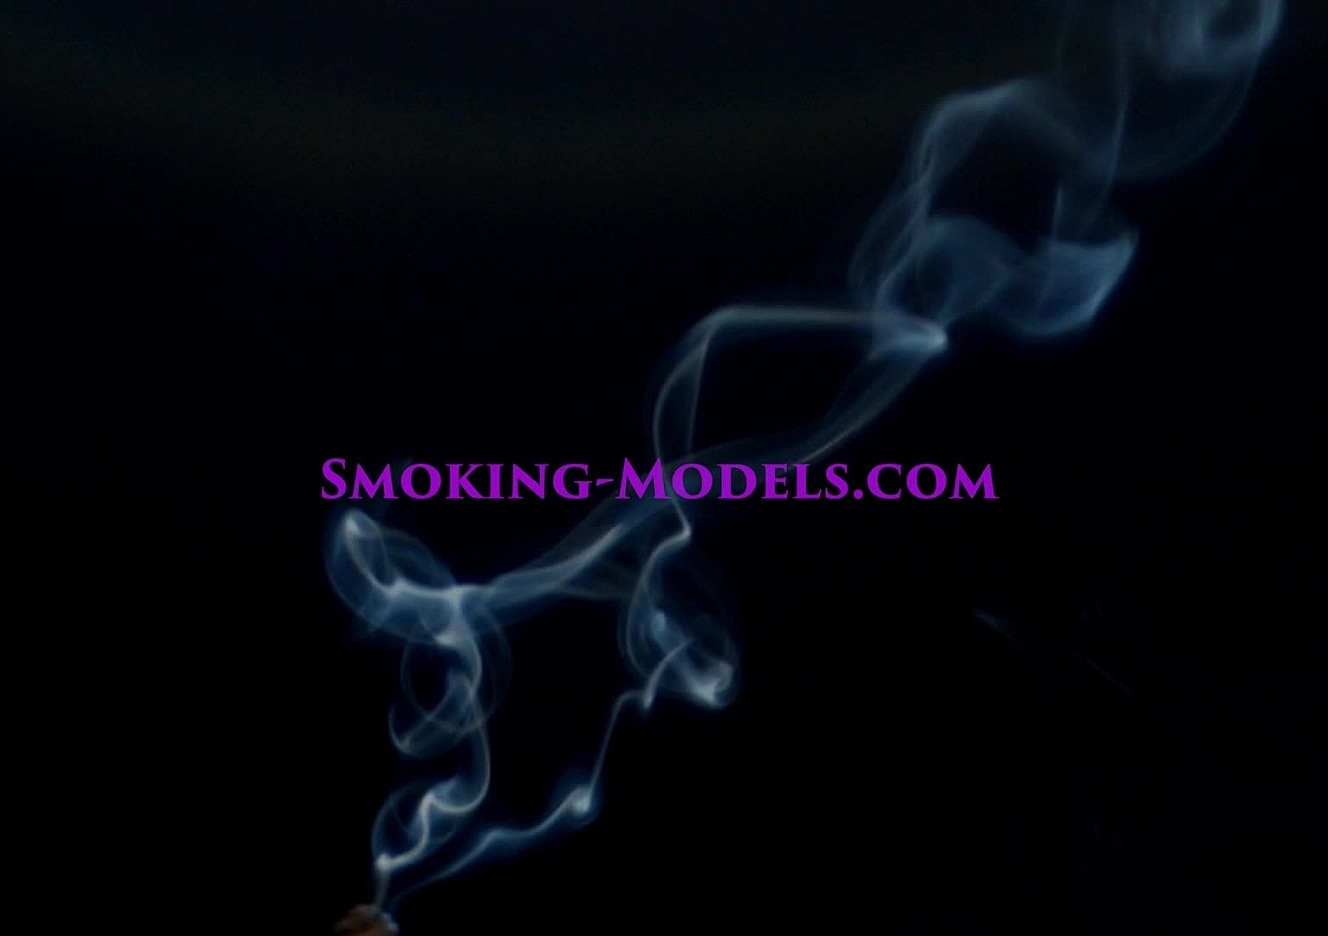 content/SMOKINGM-V-2977/0.jpg